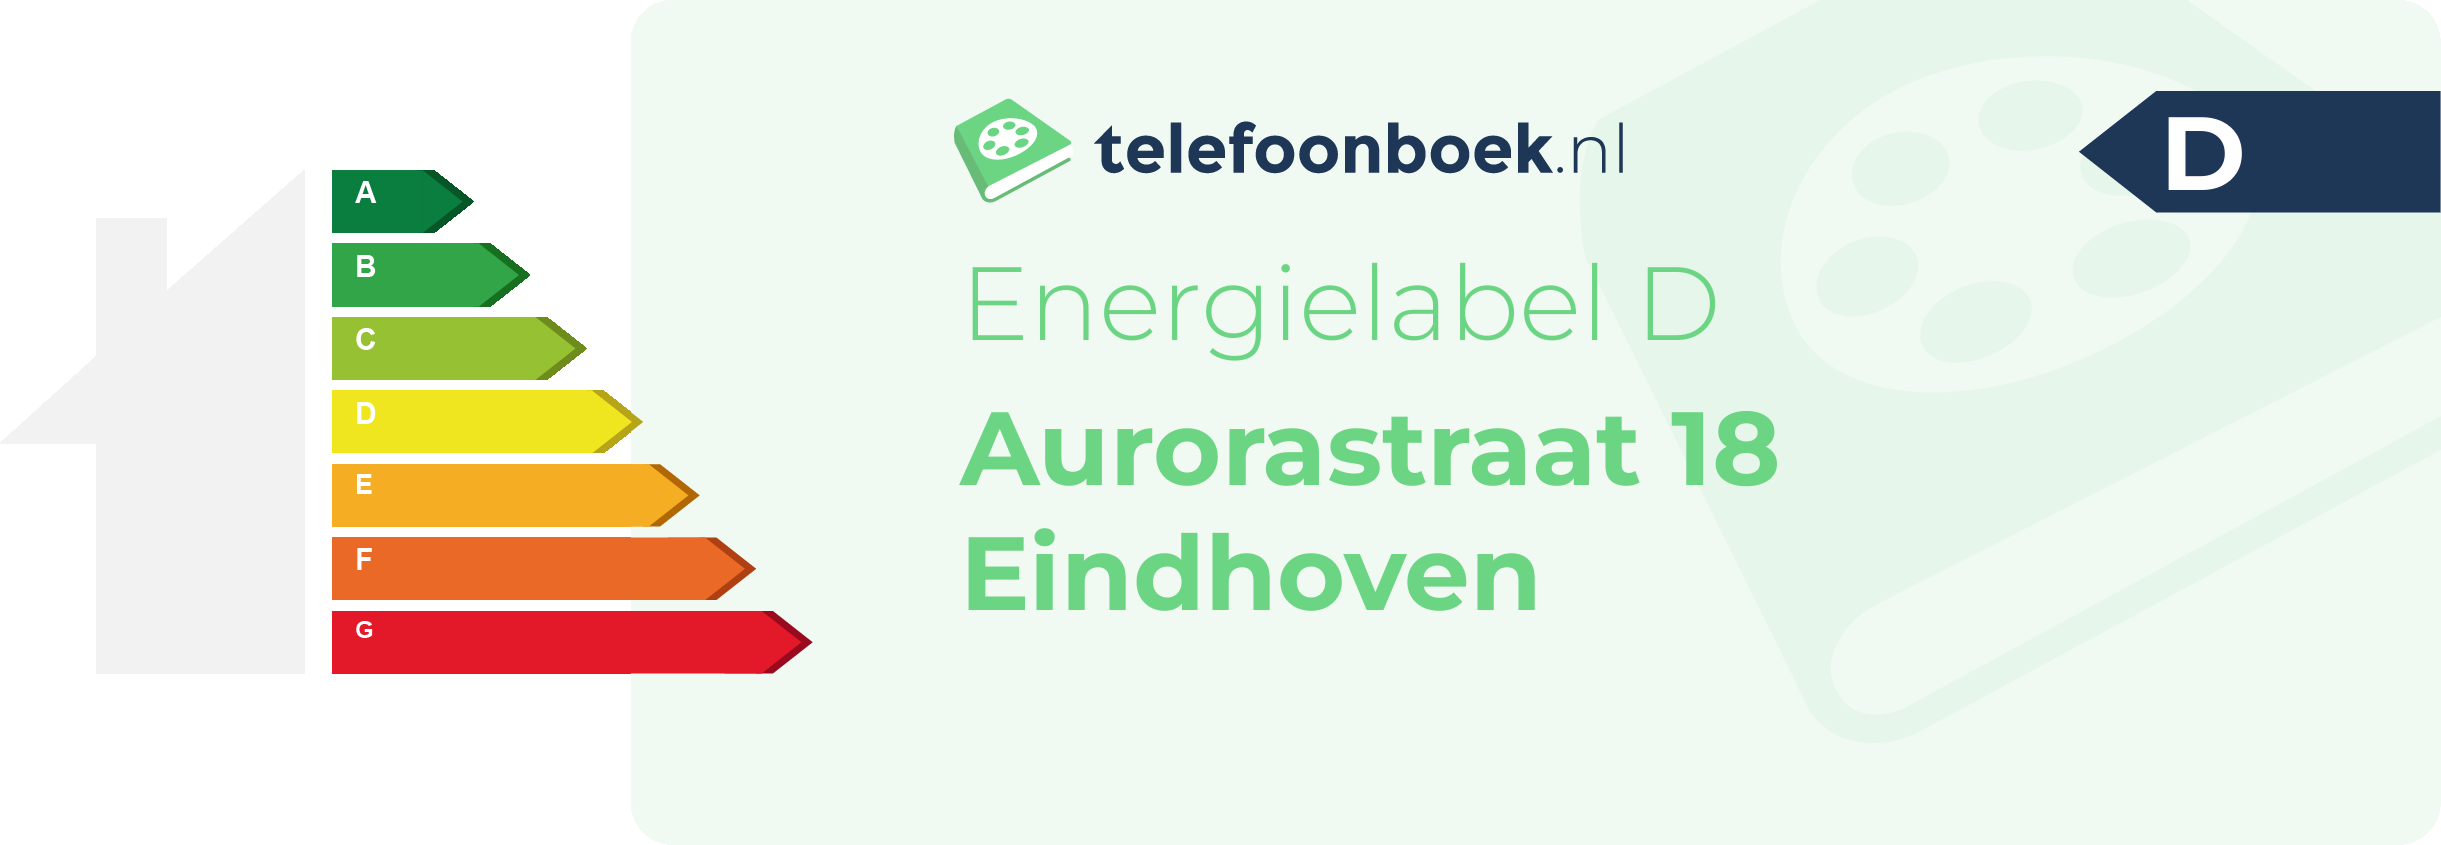 Energielabel Aurorastraat 18 Eindhoven